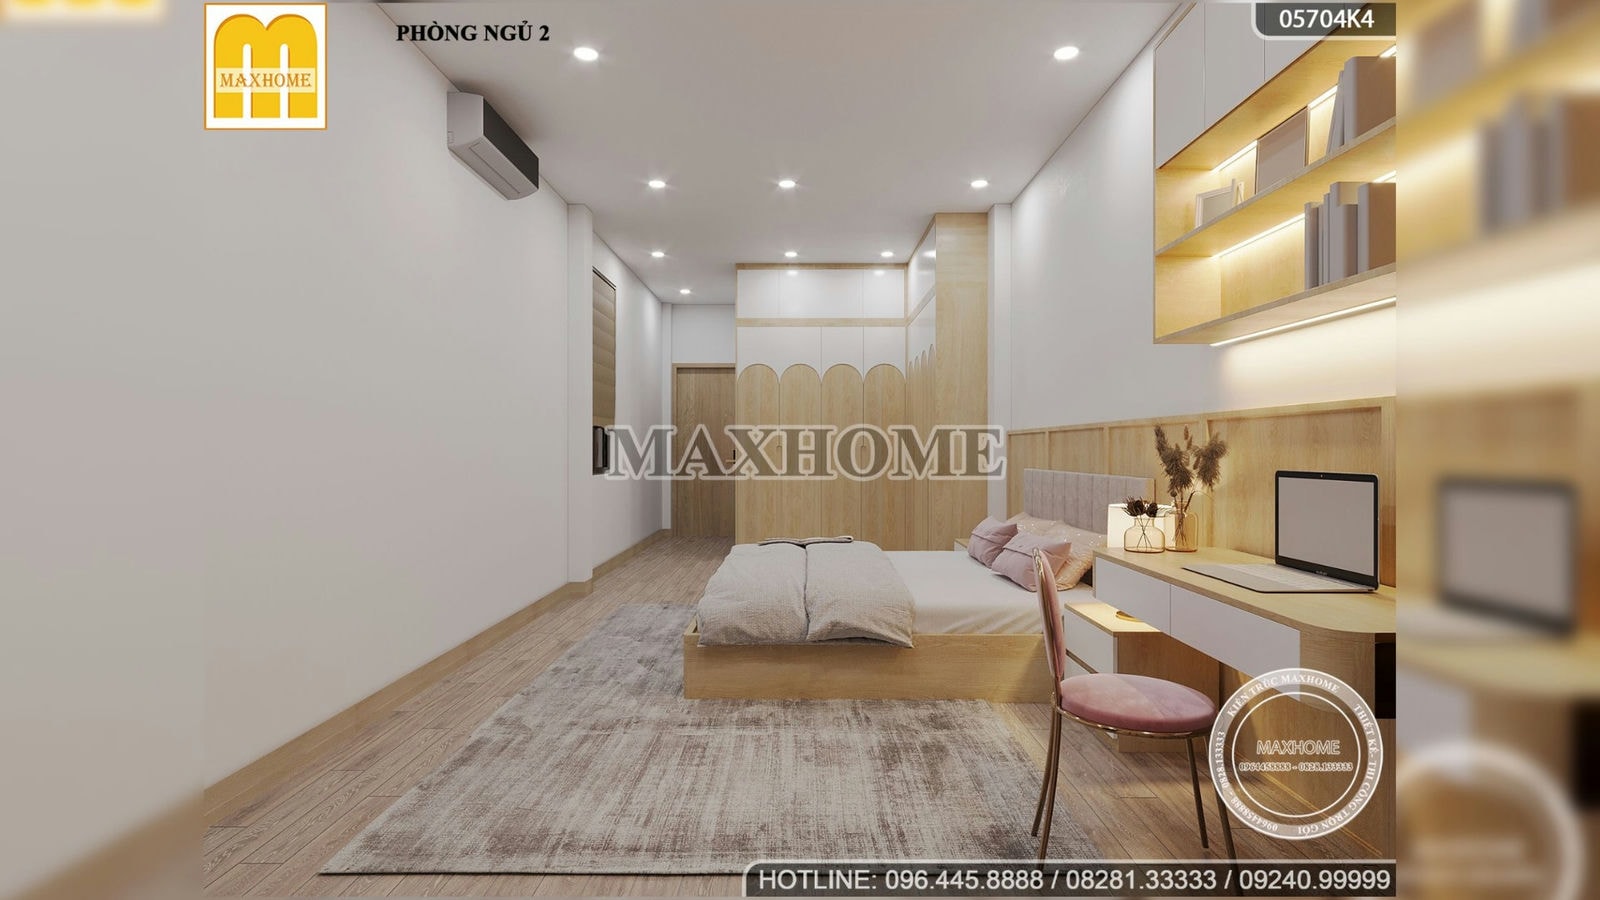 Cảm nhận sự SANG TRỌNG và TINH TẾ của bộ nội thất HIỆN ĐẠI do Maxhome thiết kế